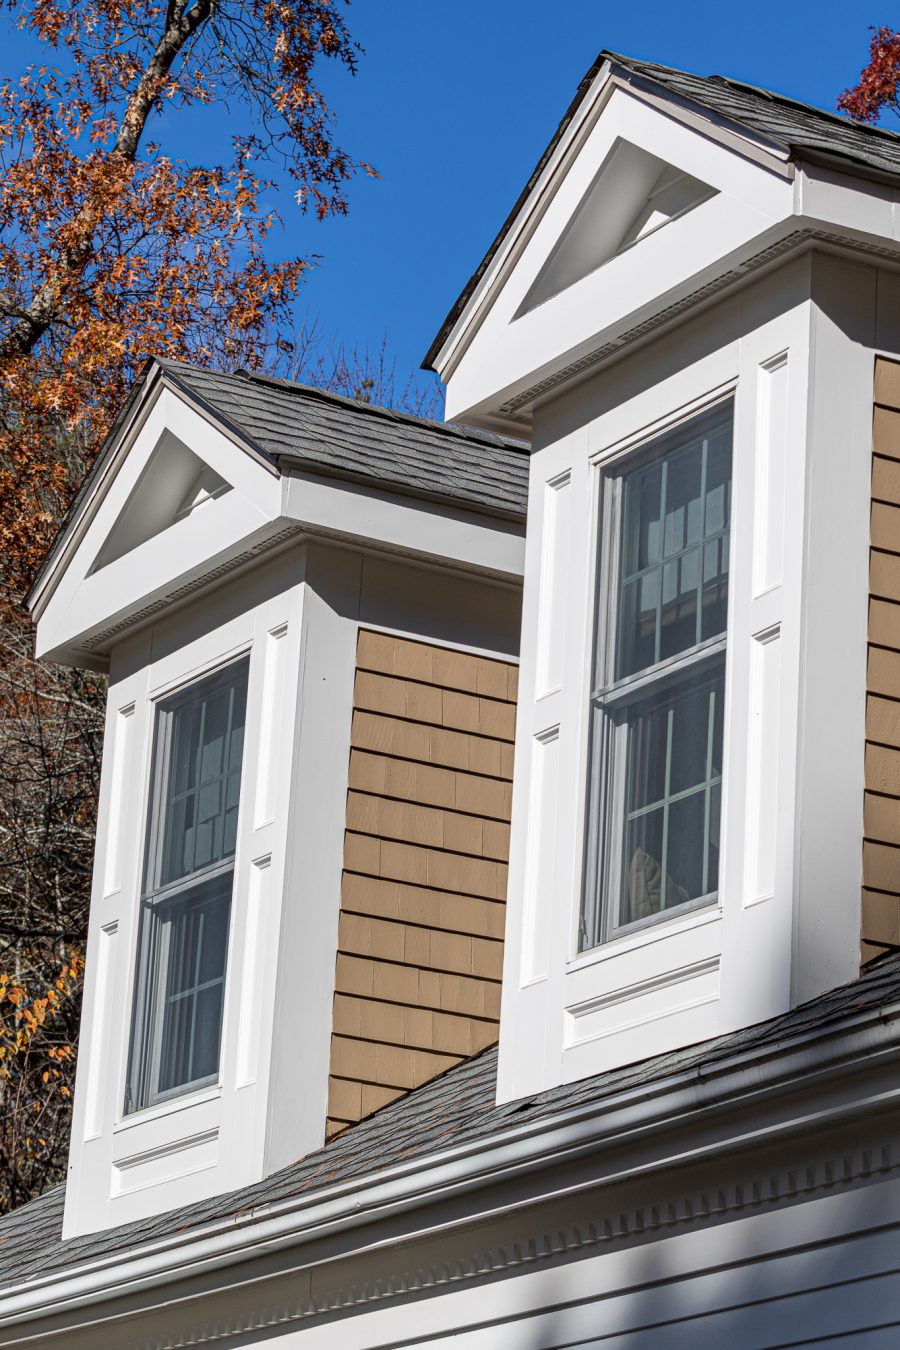 Dormer windows with white trim and tan cedar siding Preview Image 3